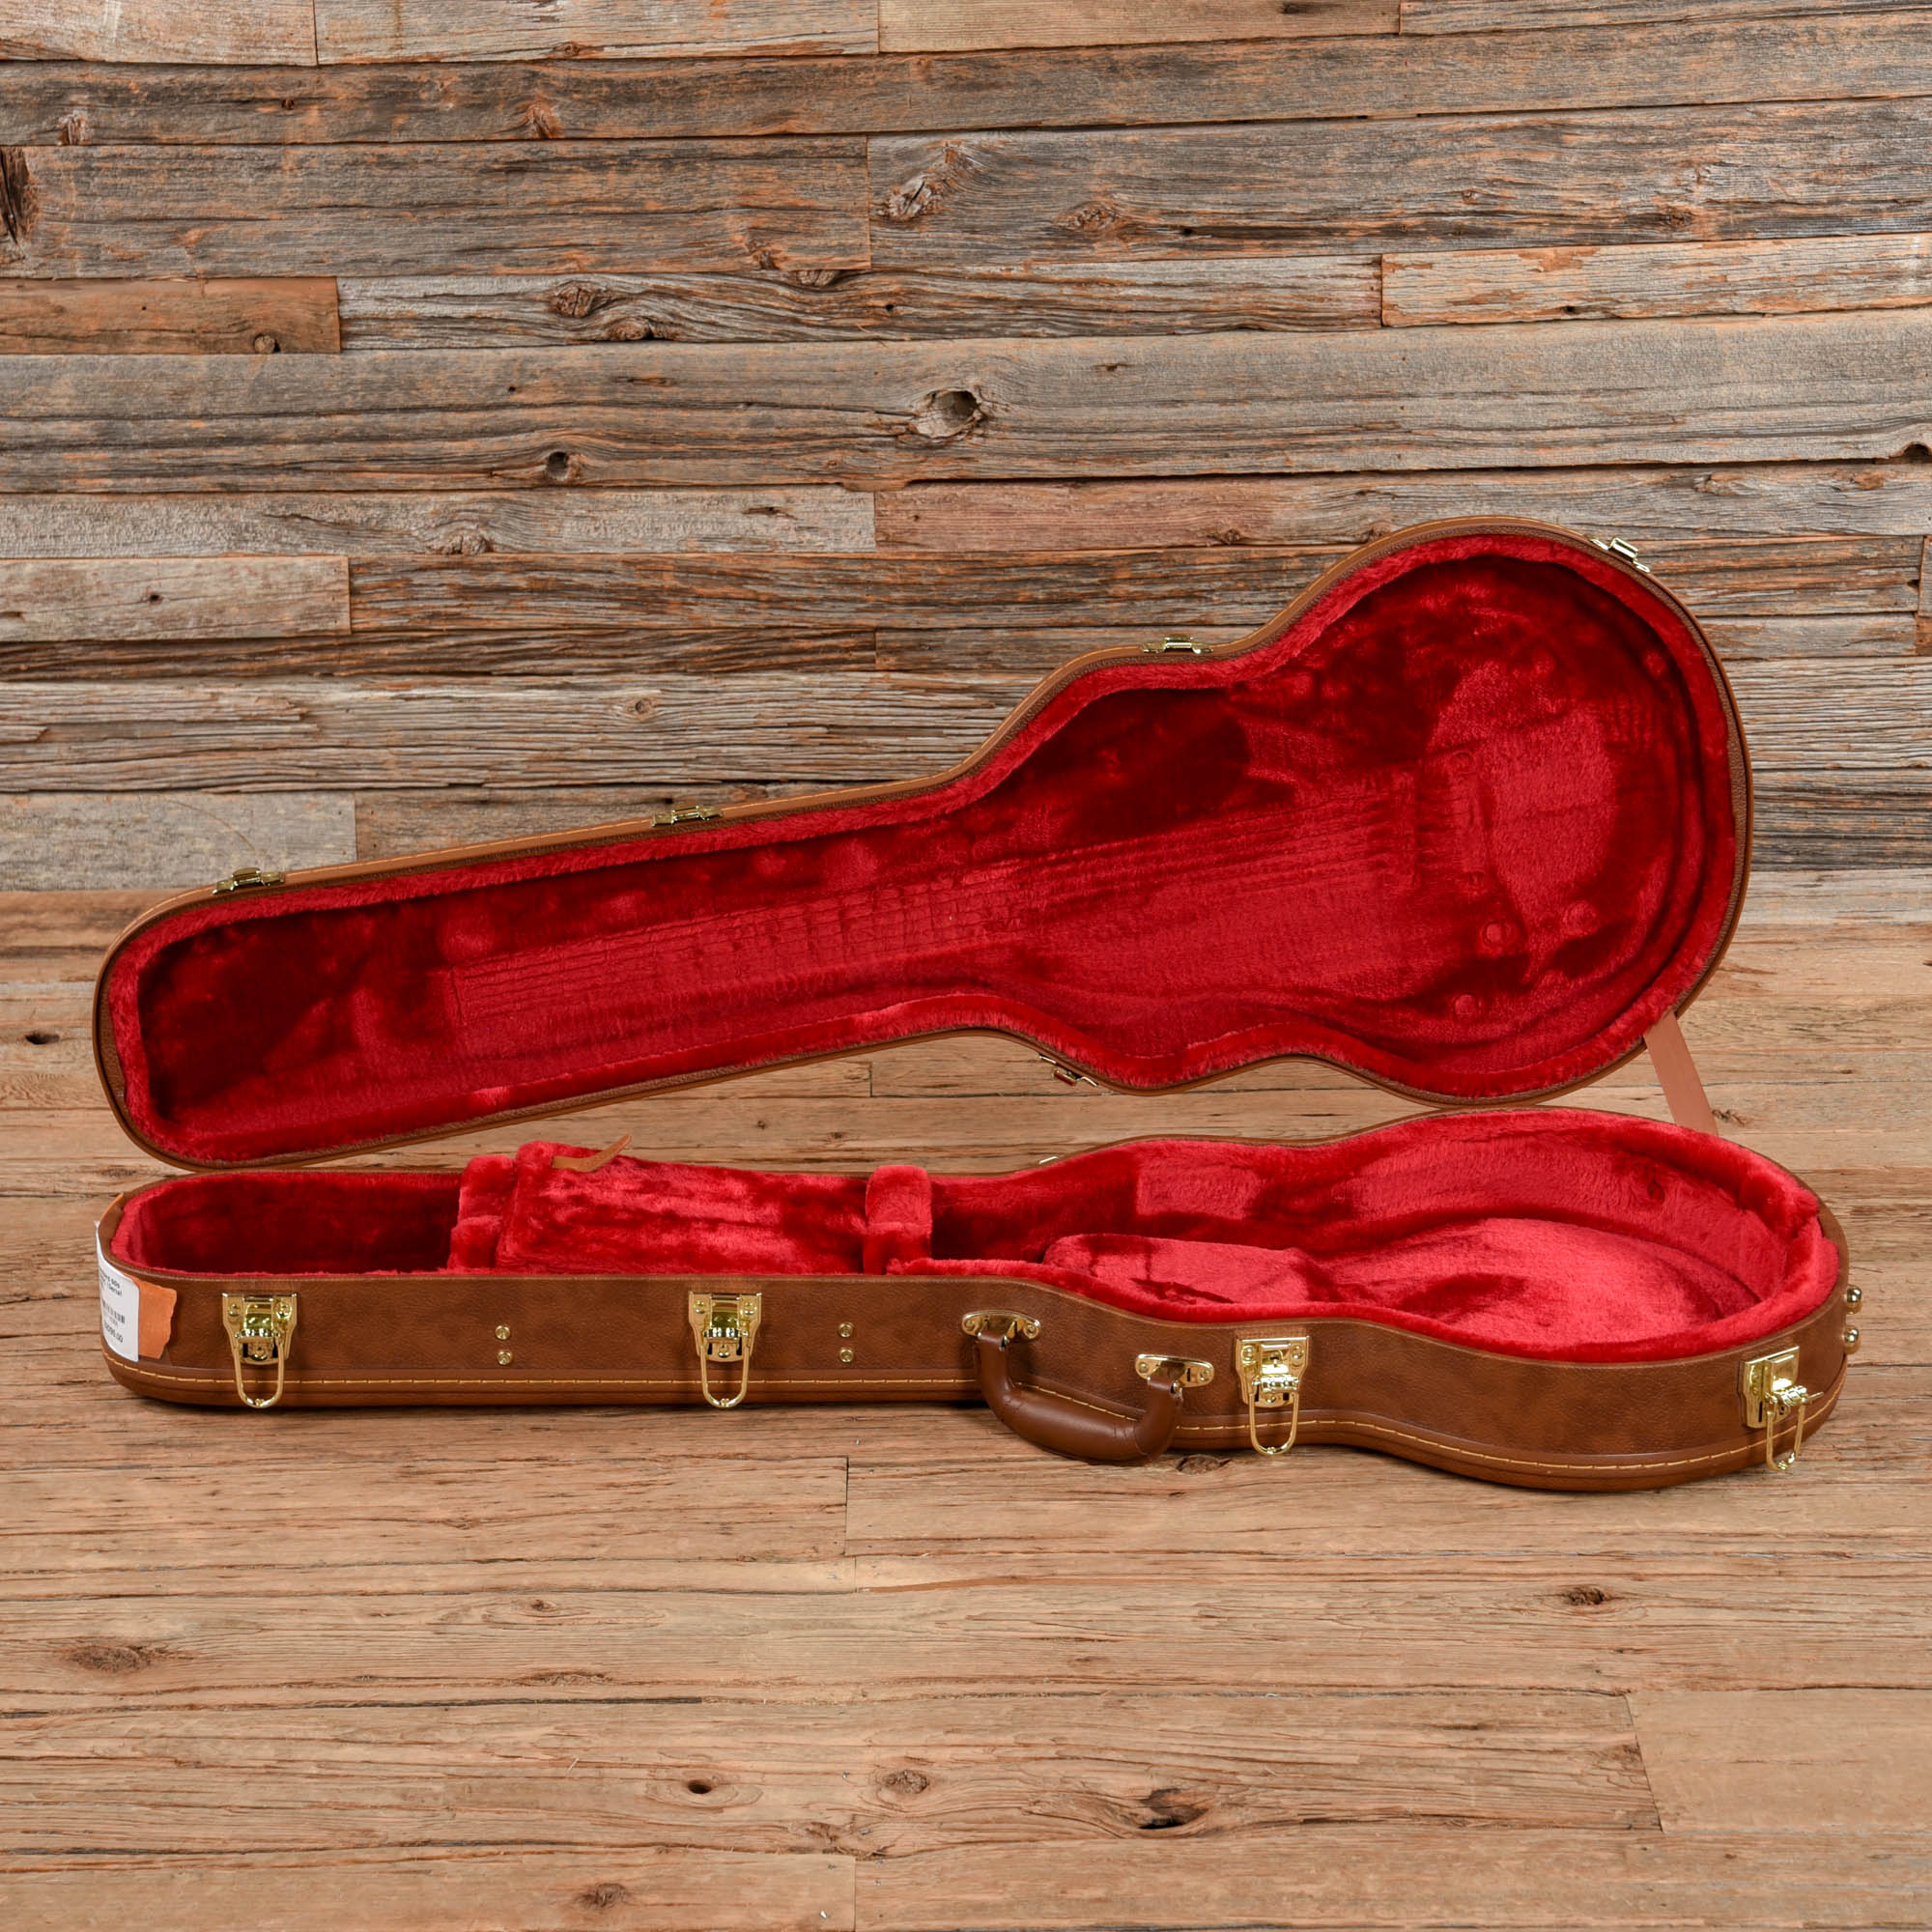 Gibson Les Paul Standard 60s Sunburst 2021